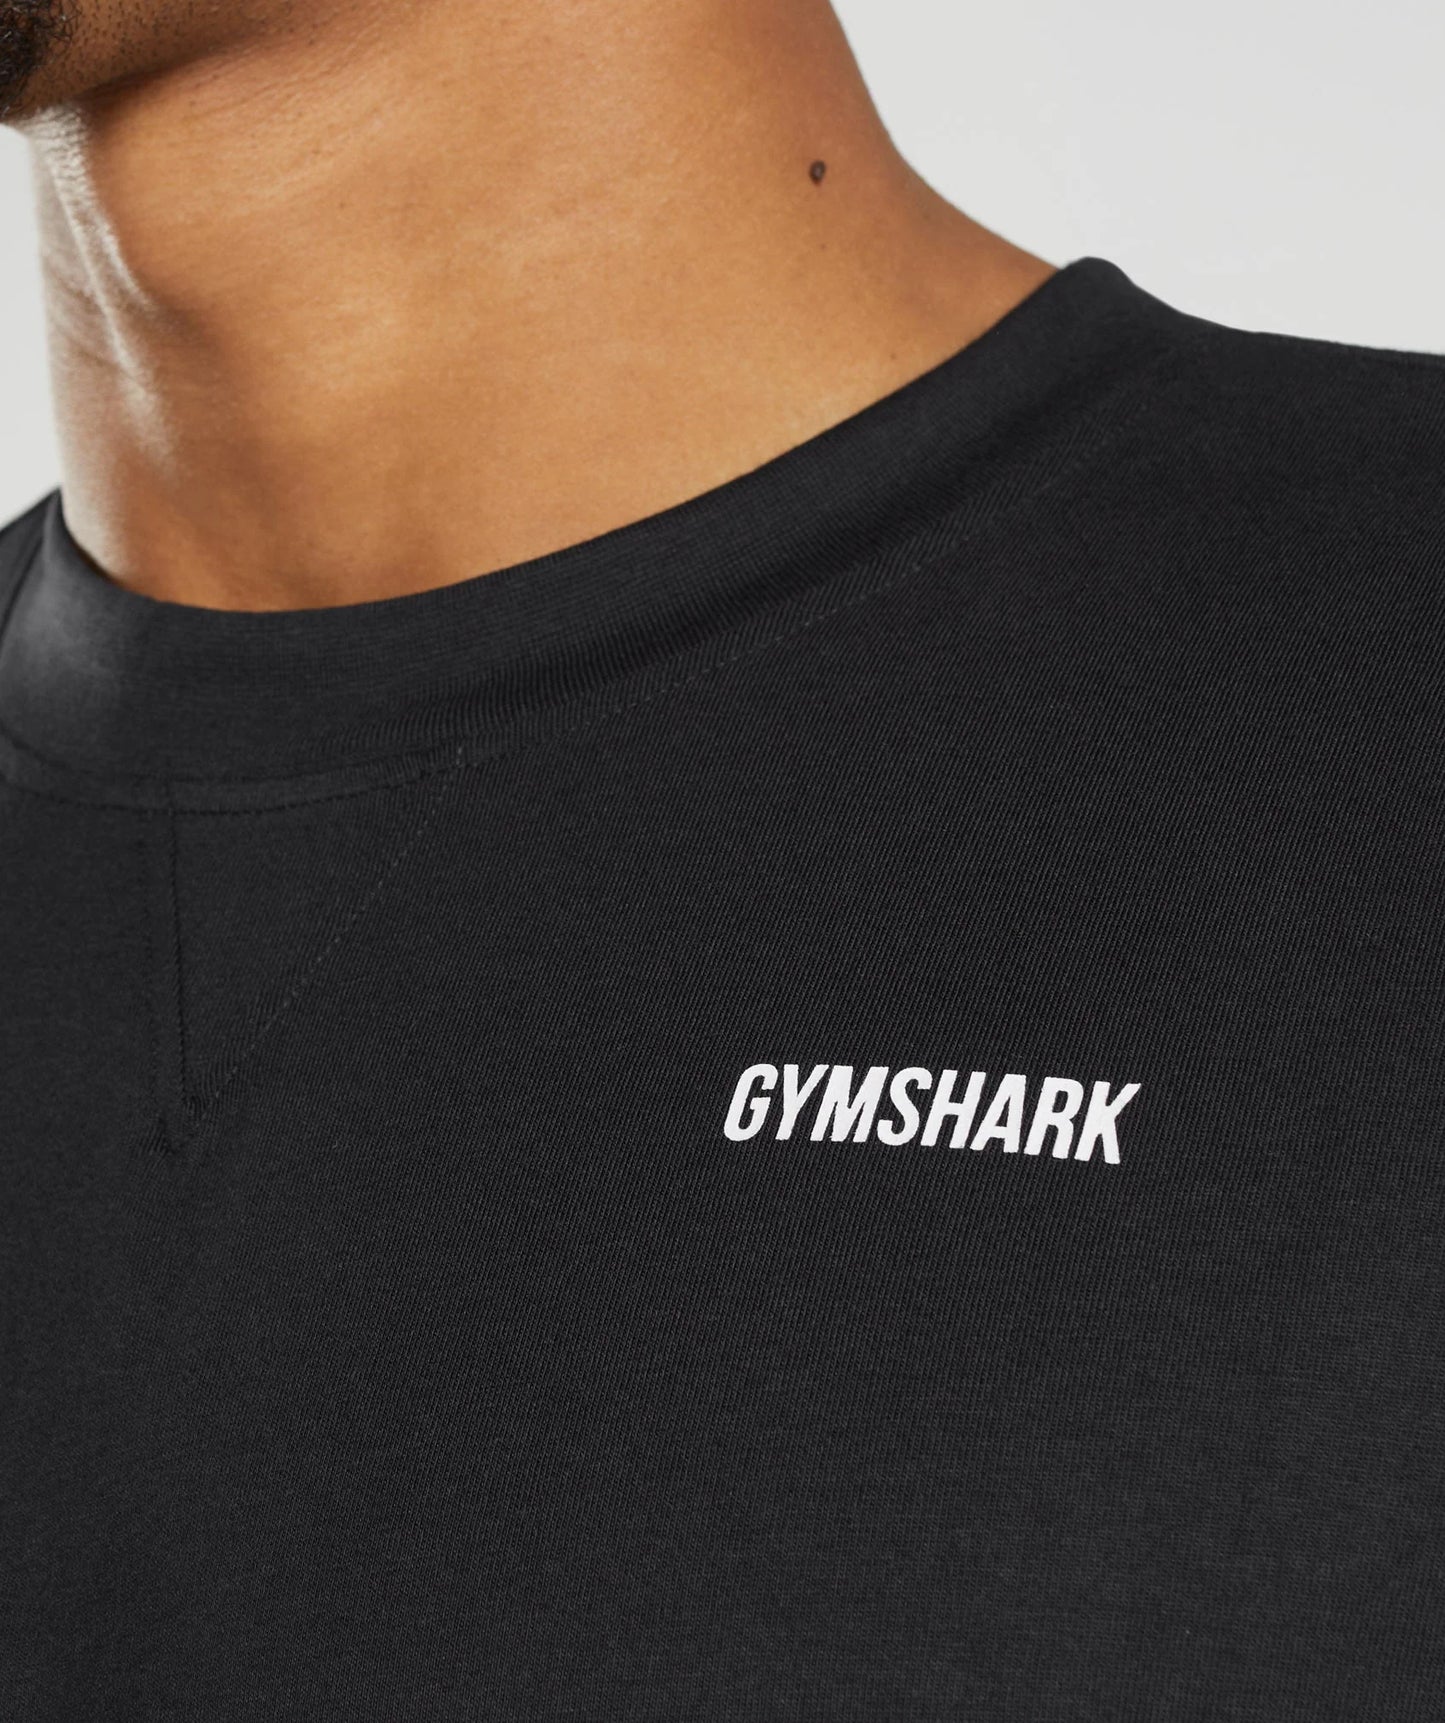 Gymshark Rest-Day Sweats T-Shirt